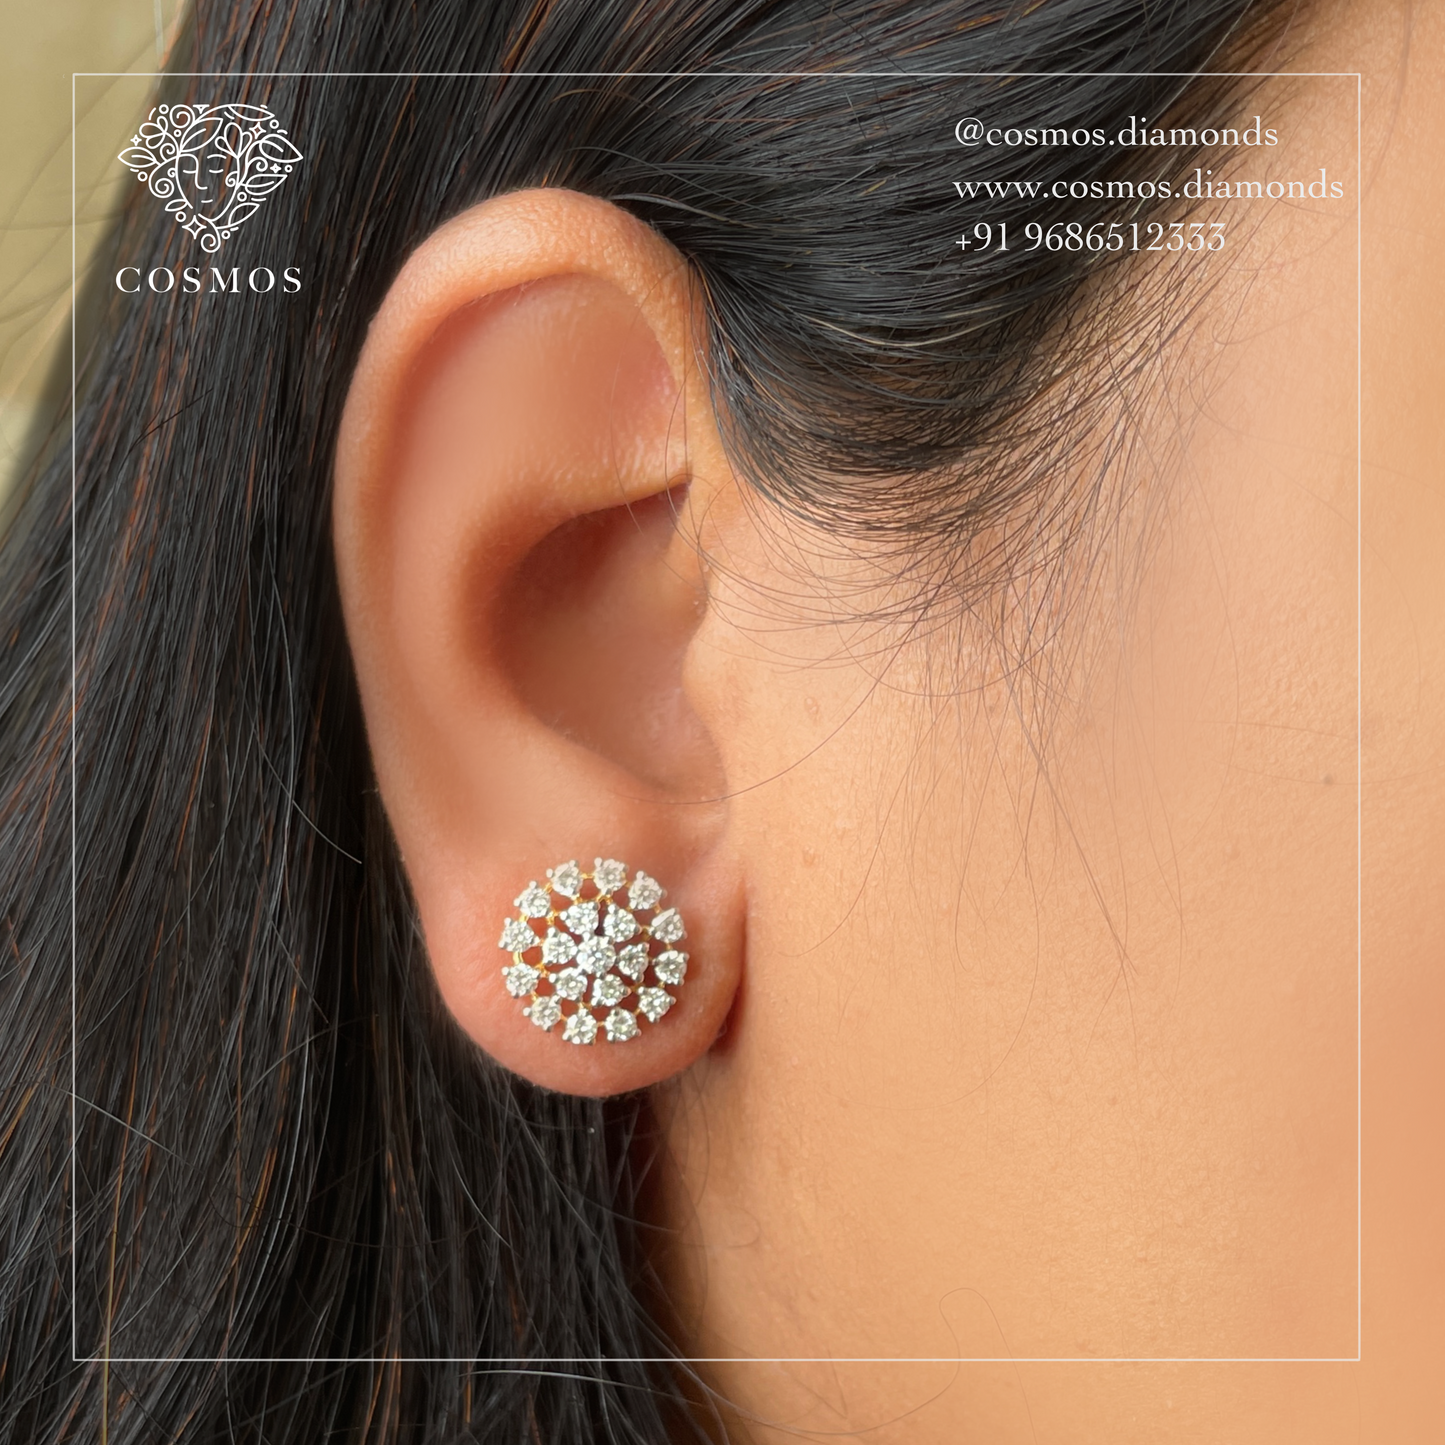 Designer classy earrings